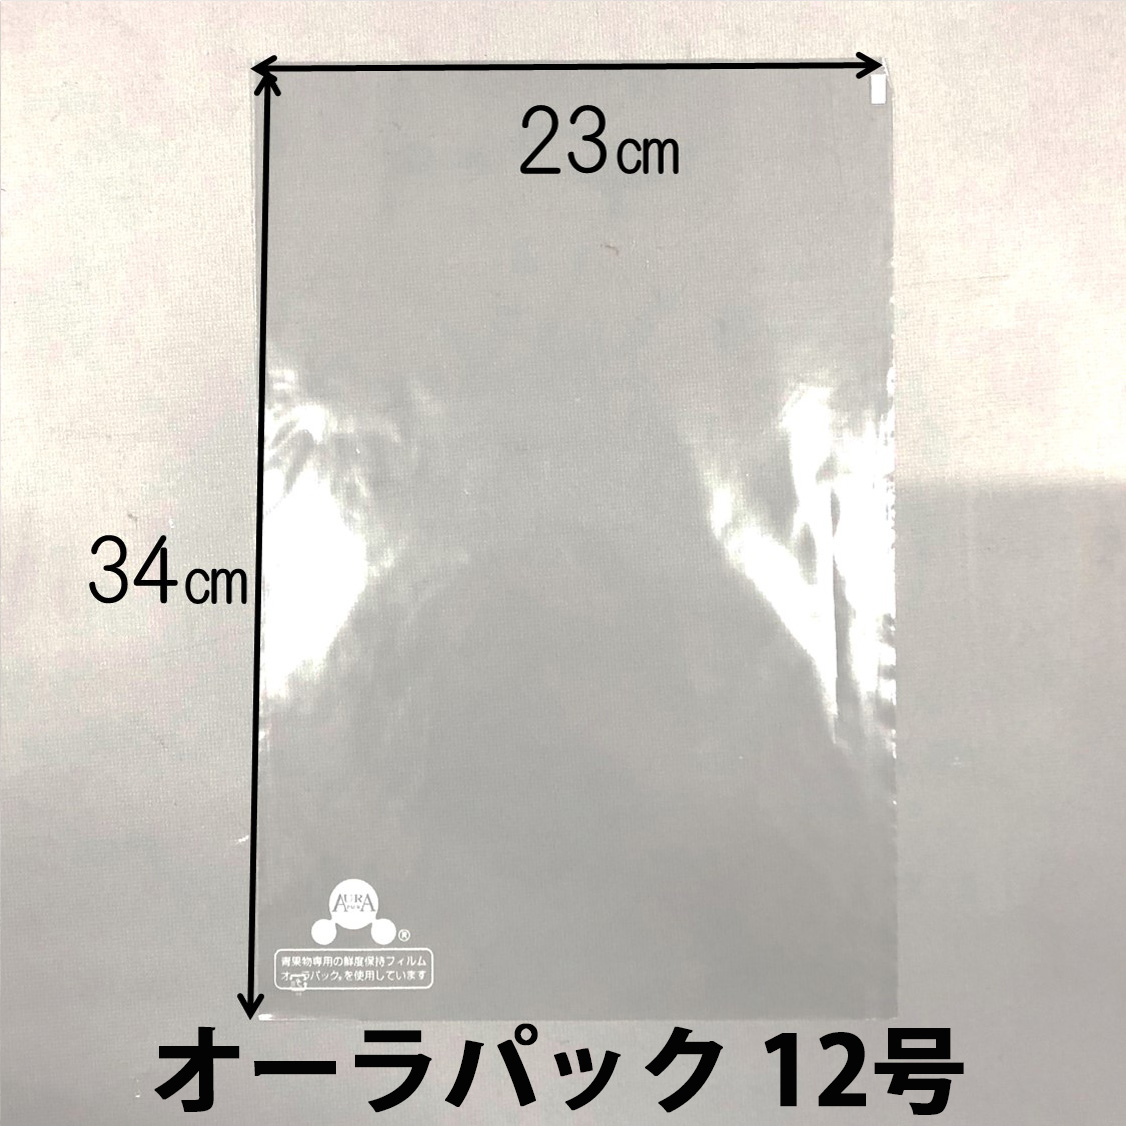 ベルグリーンワイズ オーラパック 12号(2384) 規格品 袋 青果物 無地 平袋 12号 230×340